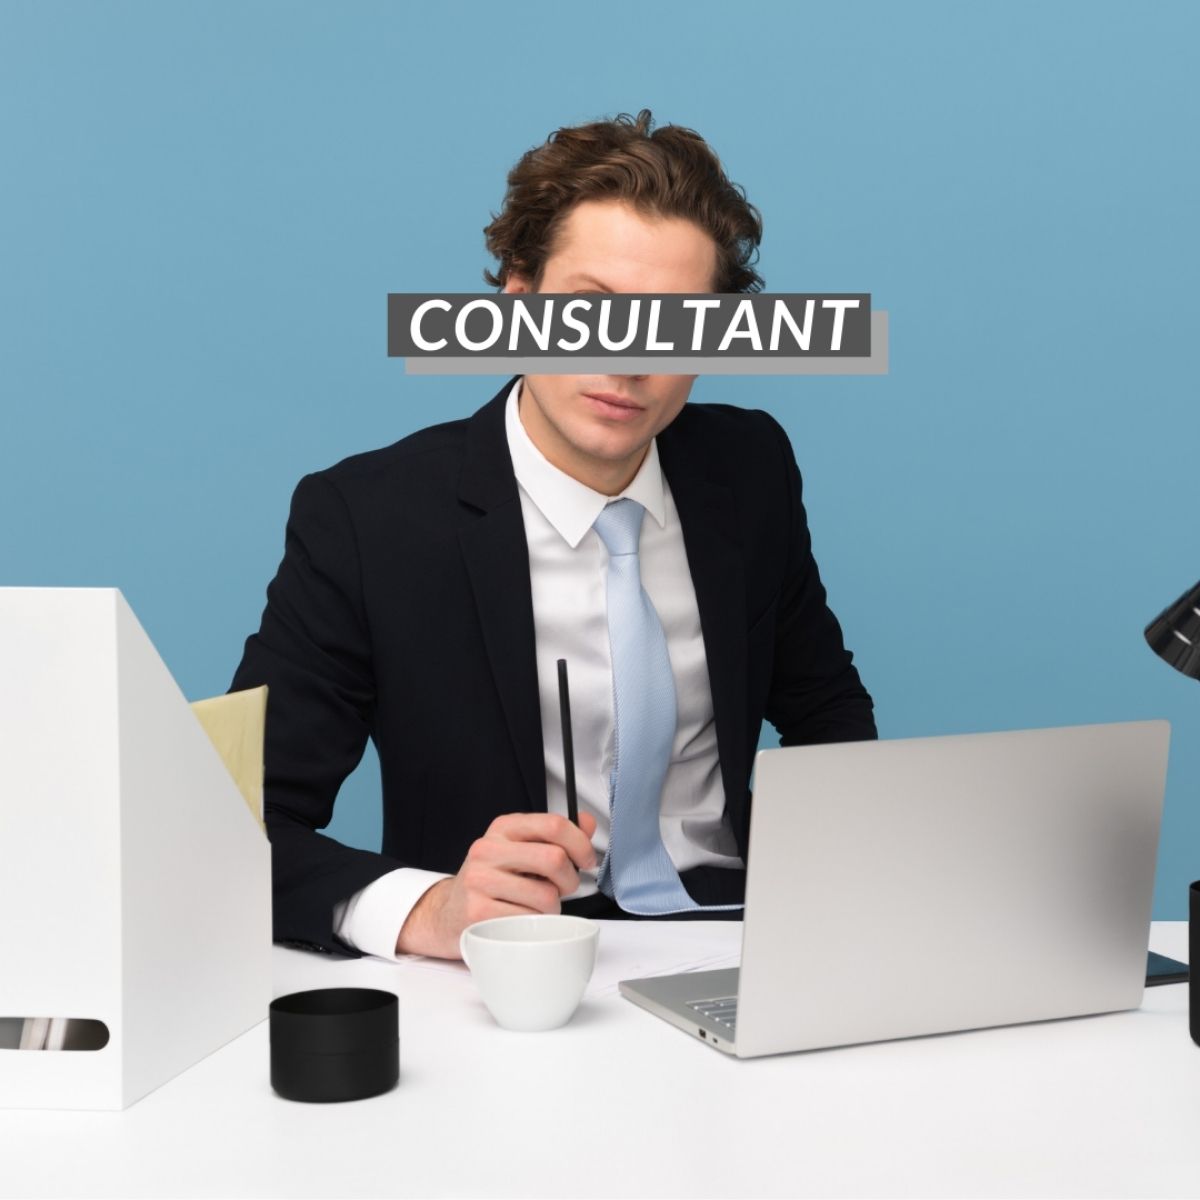 Jij als consultant - wat doet een consultant eigenlijk?